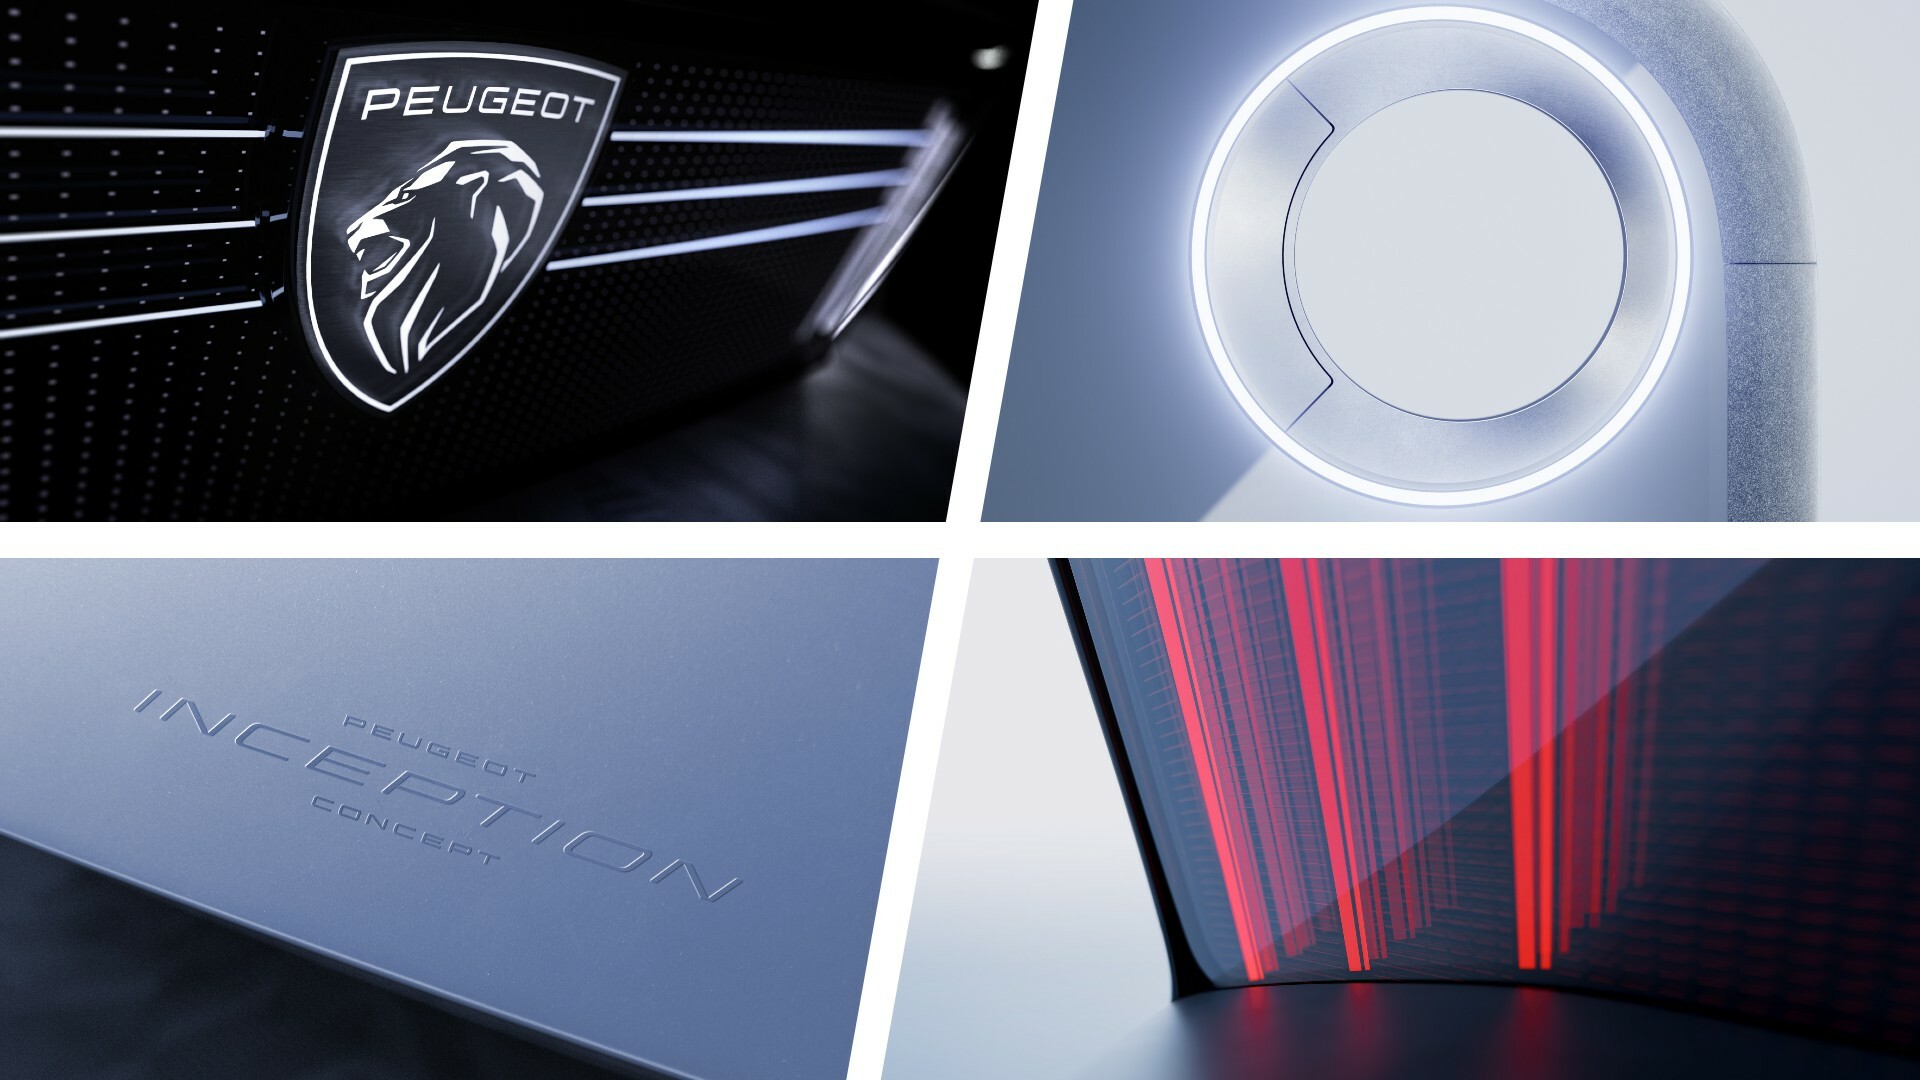 New Peugeot emblem hides some high-tech secrets - a feature by